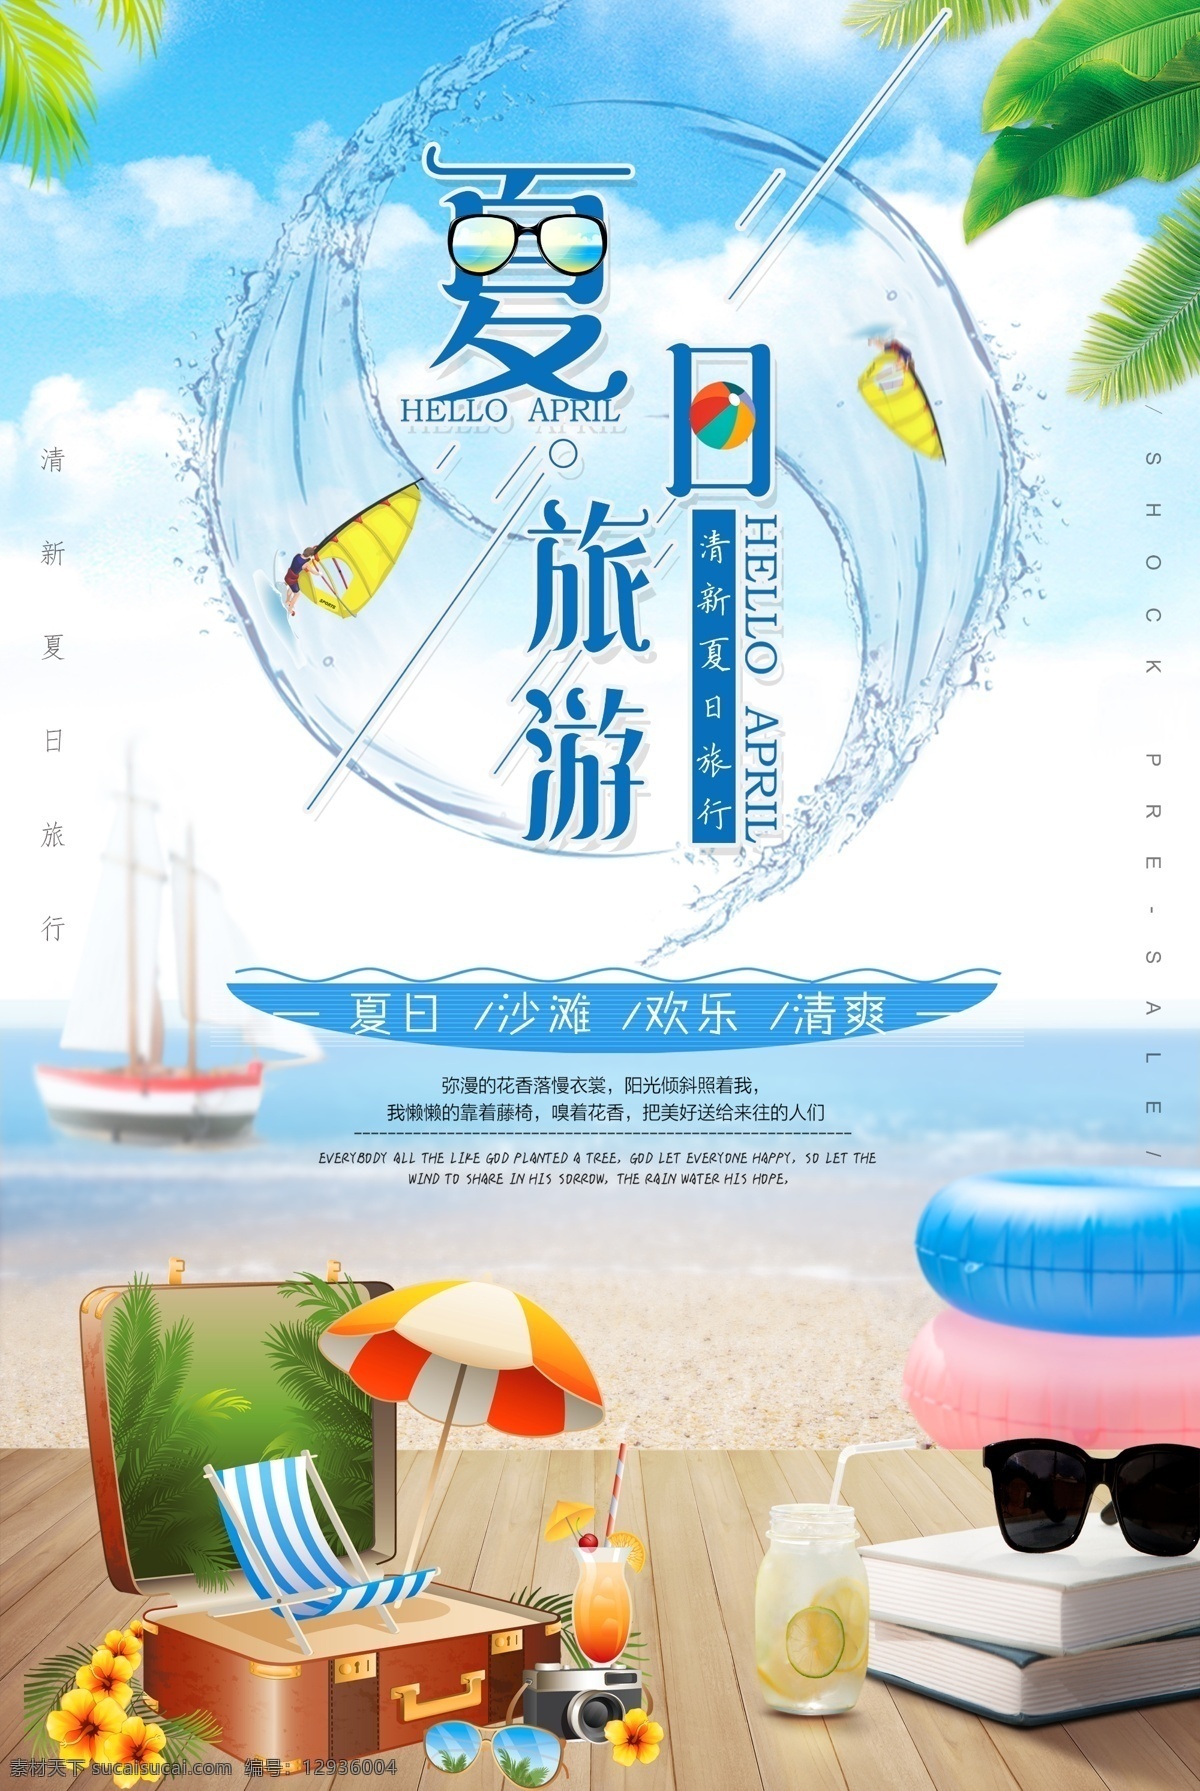 夏日旅游海报 夏日 夏季 蓝色 清爽 海边 沙滩 夏季旅行 夏日旅游 旅行社 海报